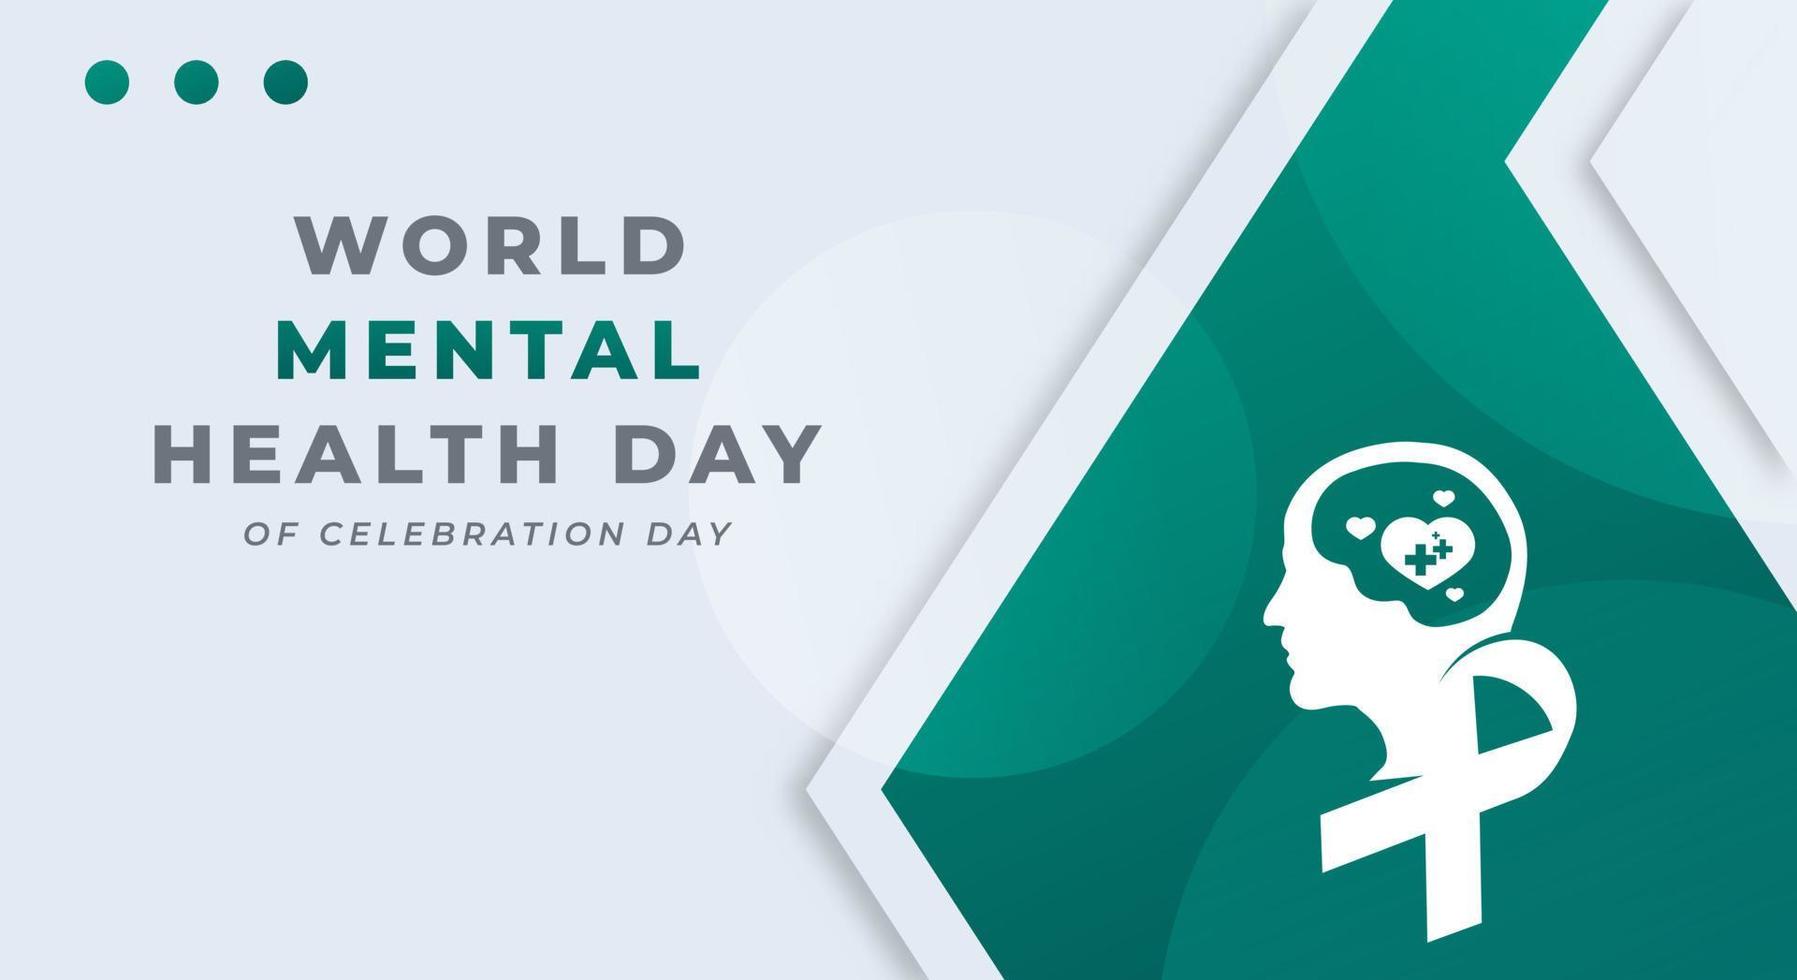 Welt mental Gesundheit Tag Feier Vektor Design Illustration zum Hintergrund, Poster, Banner, Werbung, Gruß Karte